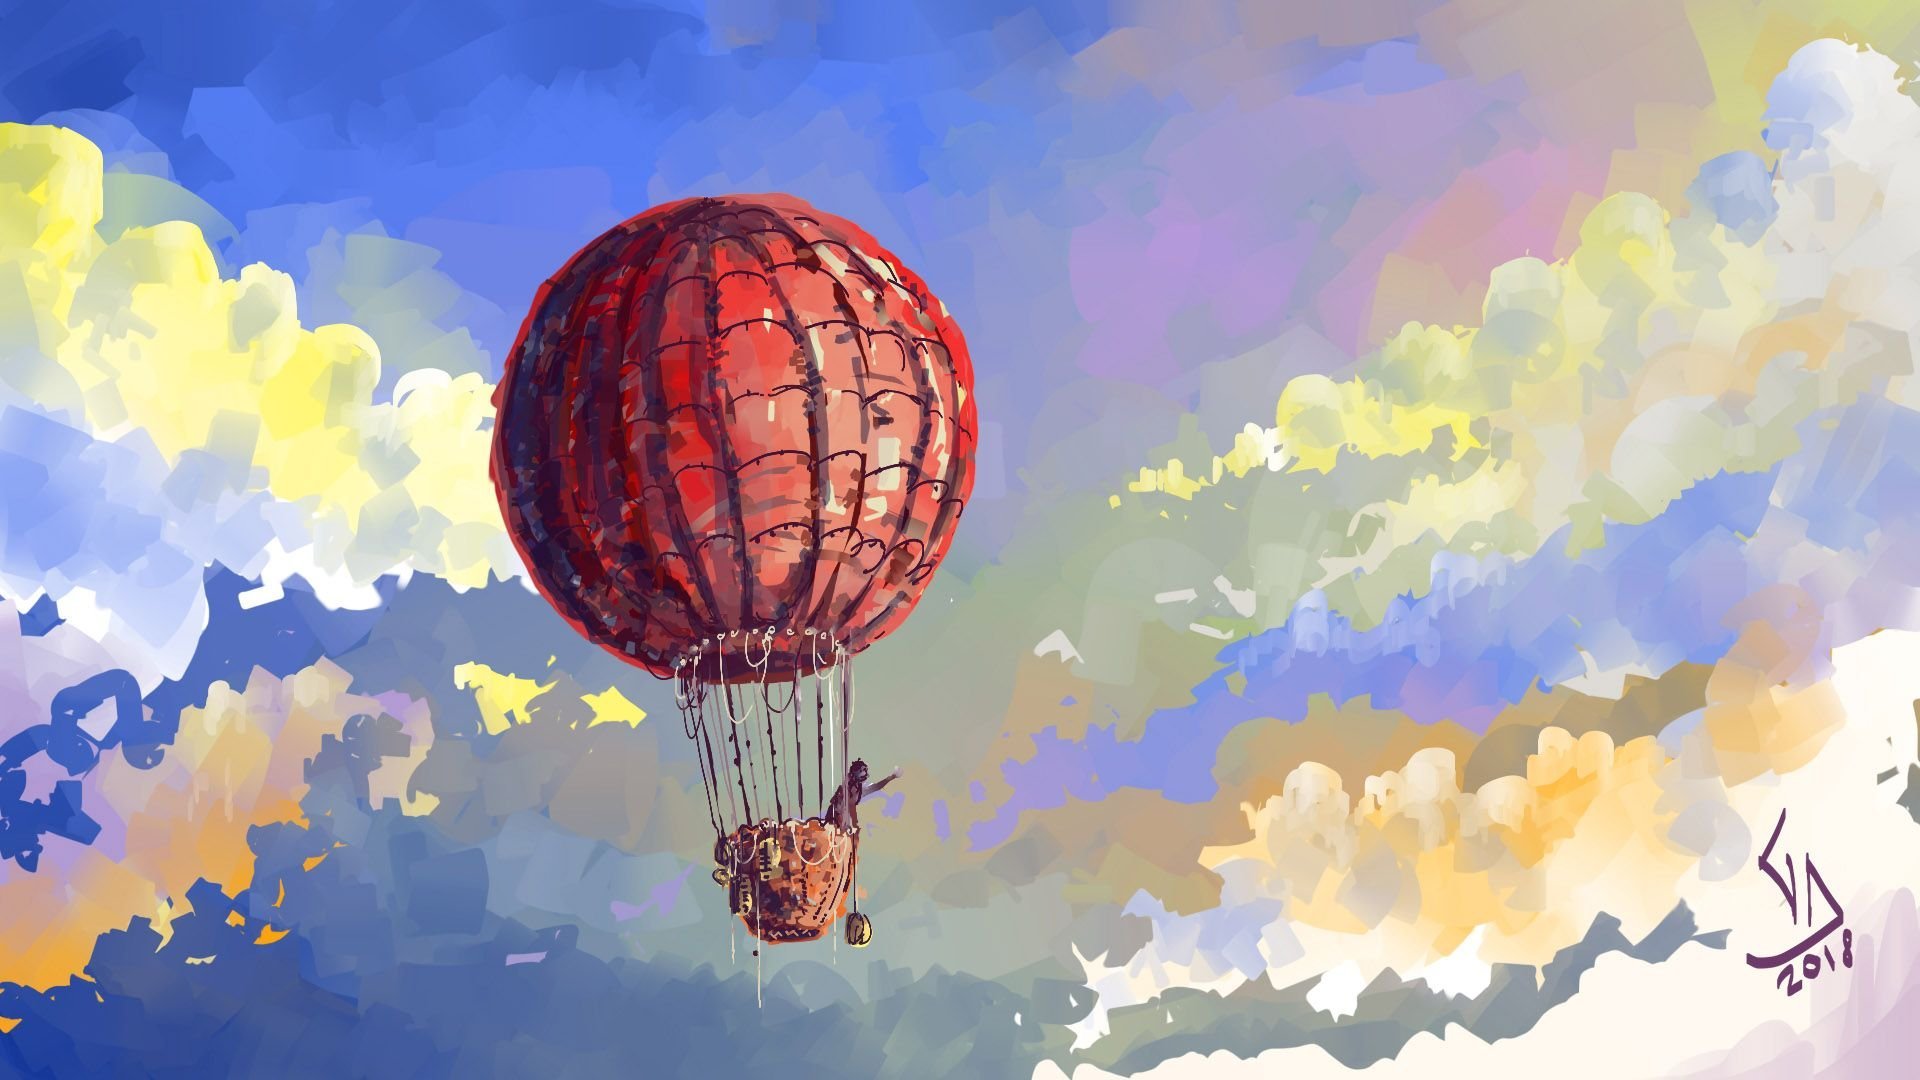 Герой на воздушном шаре. Воздушный шар в небе. Воздушный шар арт. Пейзаж с воздушными шарами. Шар воздушный с рисунком.